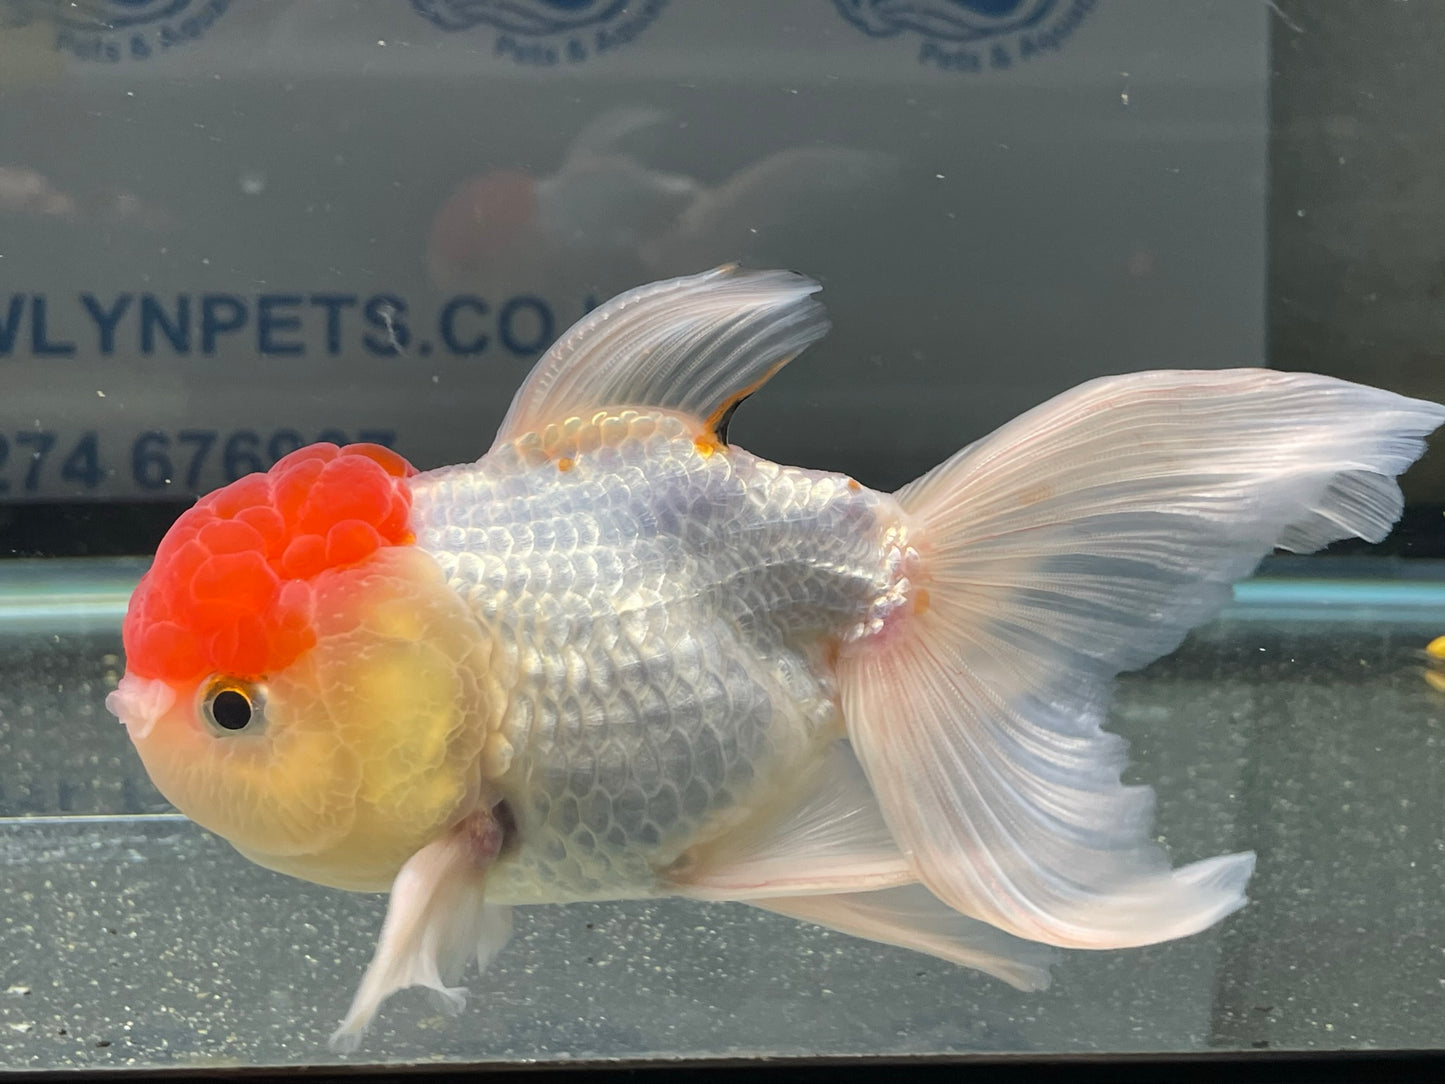 Red Cap Oranda Fancy Goldfish 13-14cm #5 (Fish In Photos)